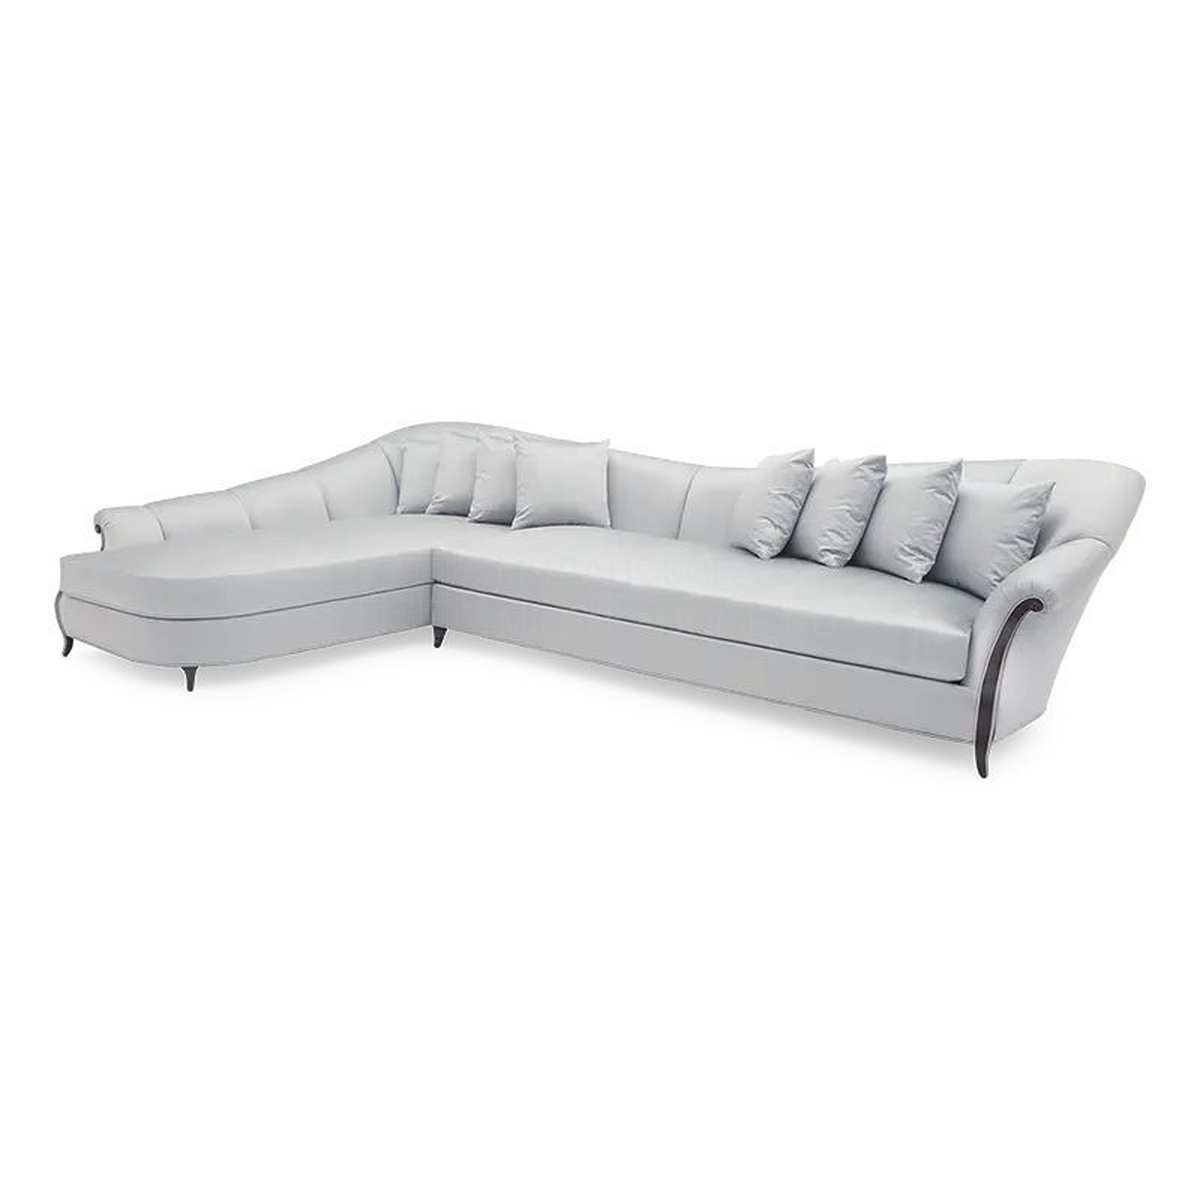 Модульный диван Virage modular sofa  из США фабрики CHRISTOPHER GUY